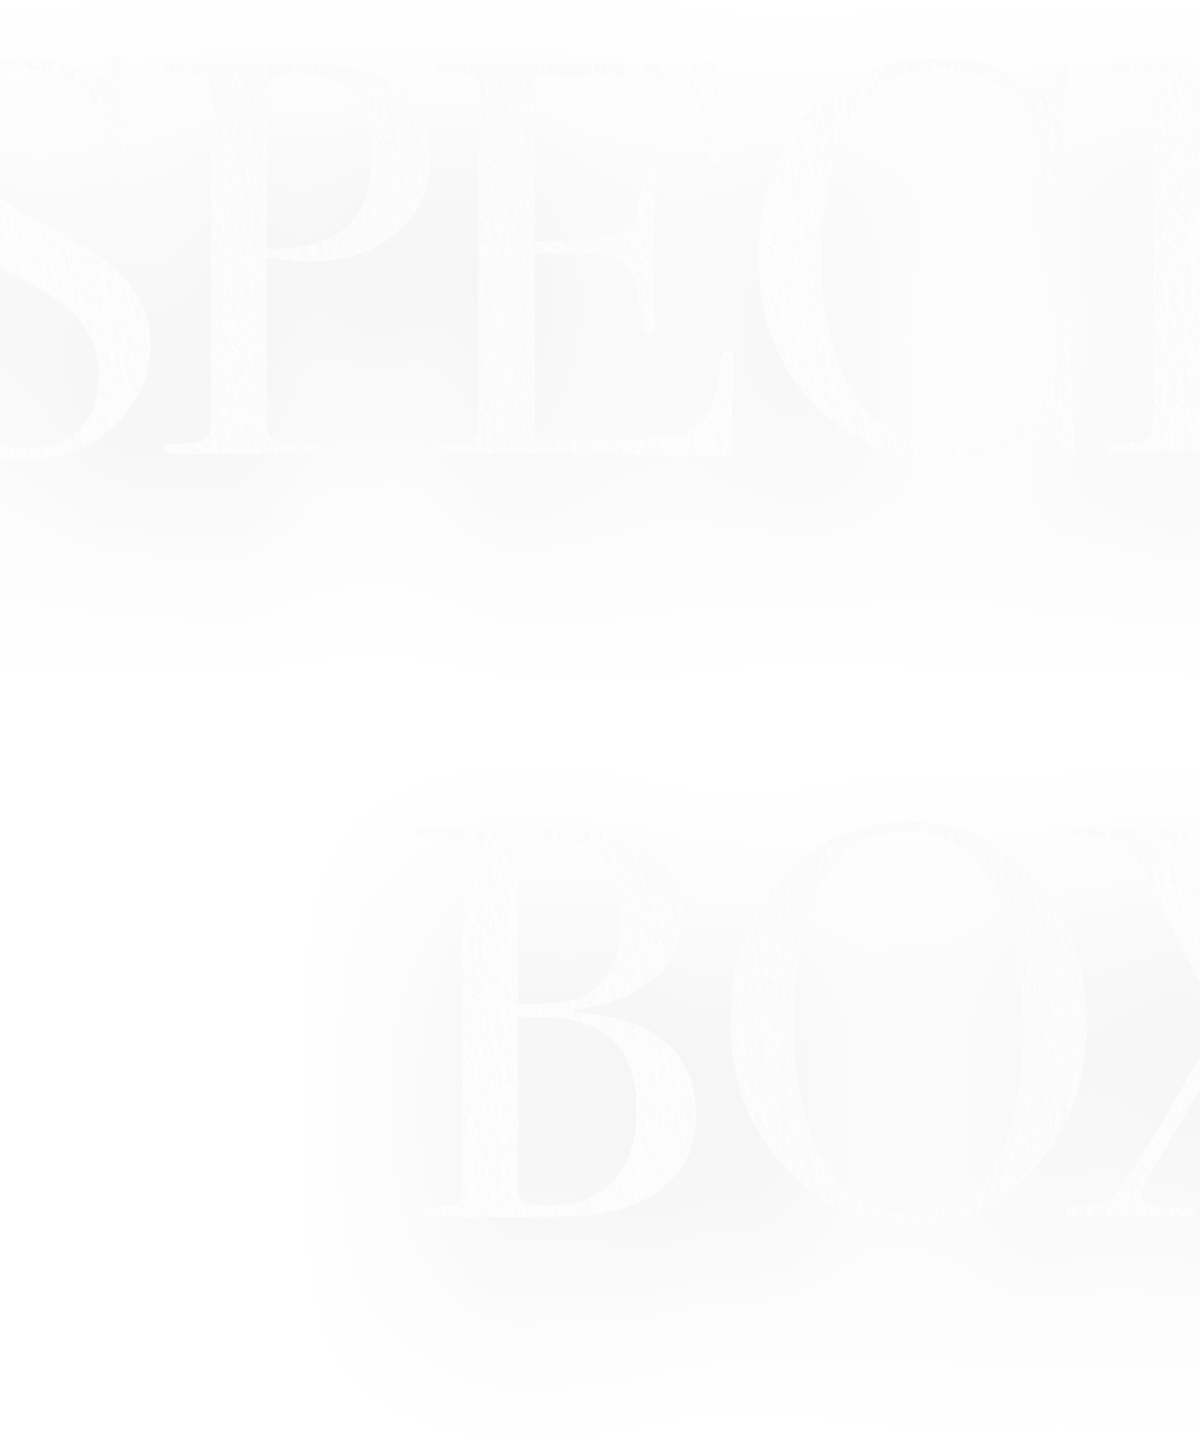 SPECIALBOX